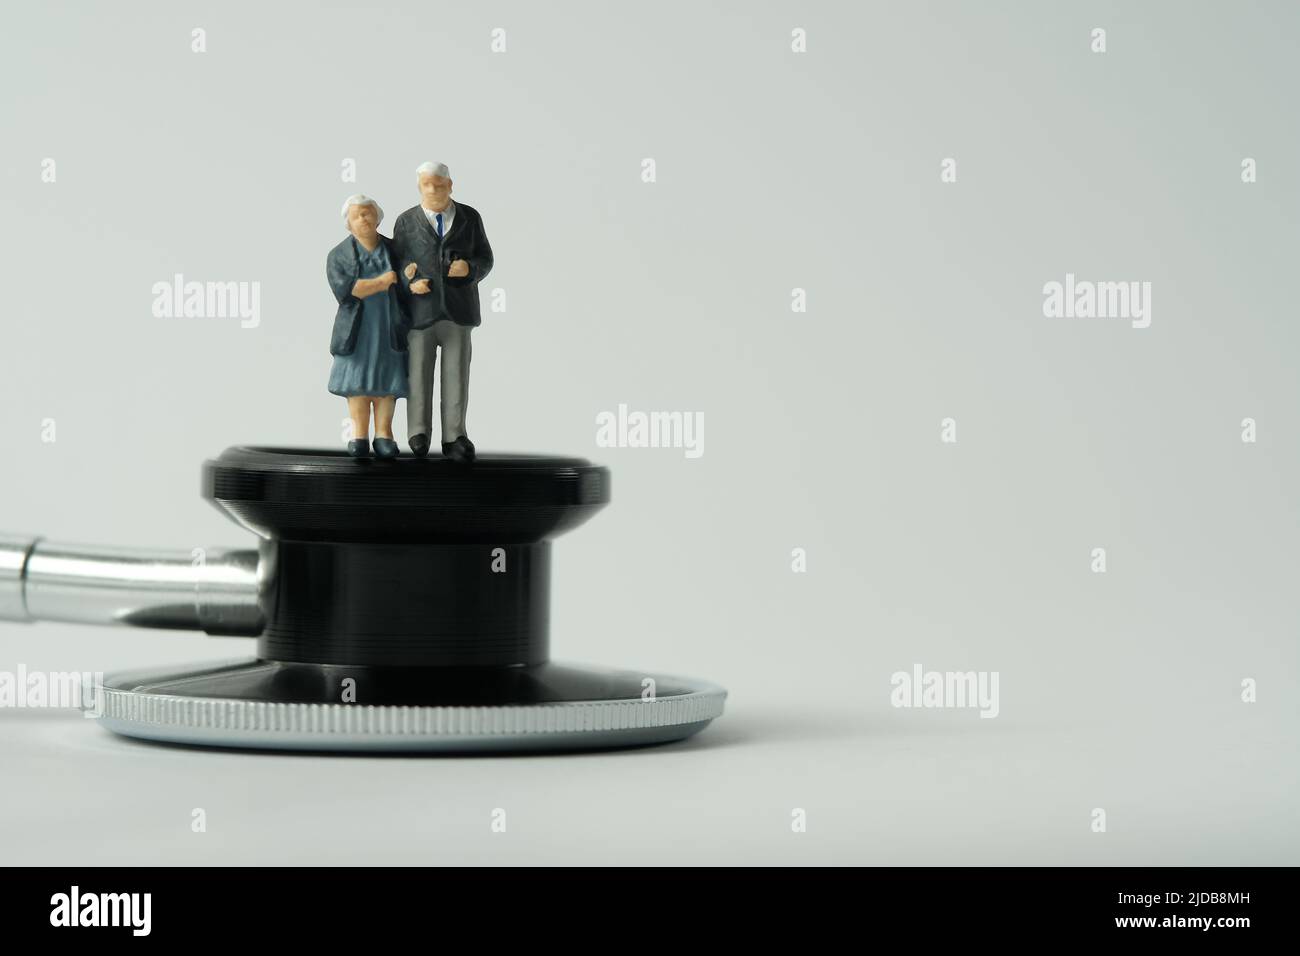 Miniatur Menschen Spielzeug konzeptuelle Fotografie. Älteres Paar, das medizinische Untersuchungen macht und über Stethoskop steht. Isoliert auf weißem Hintergrund. I Stockfoto